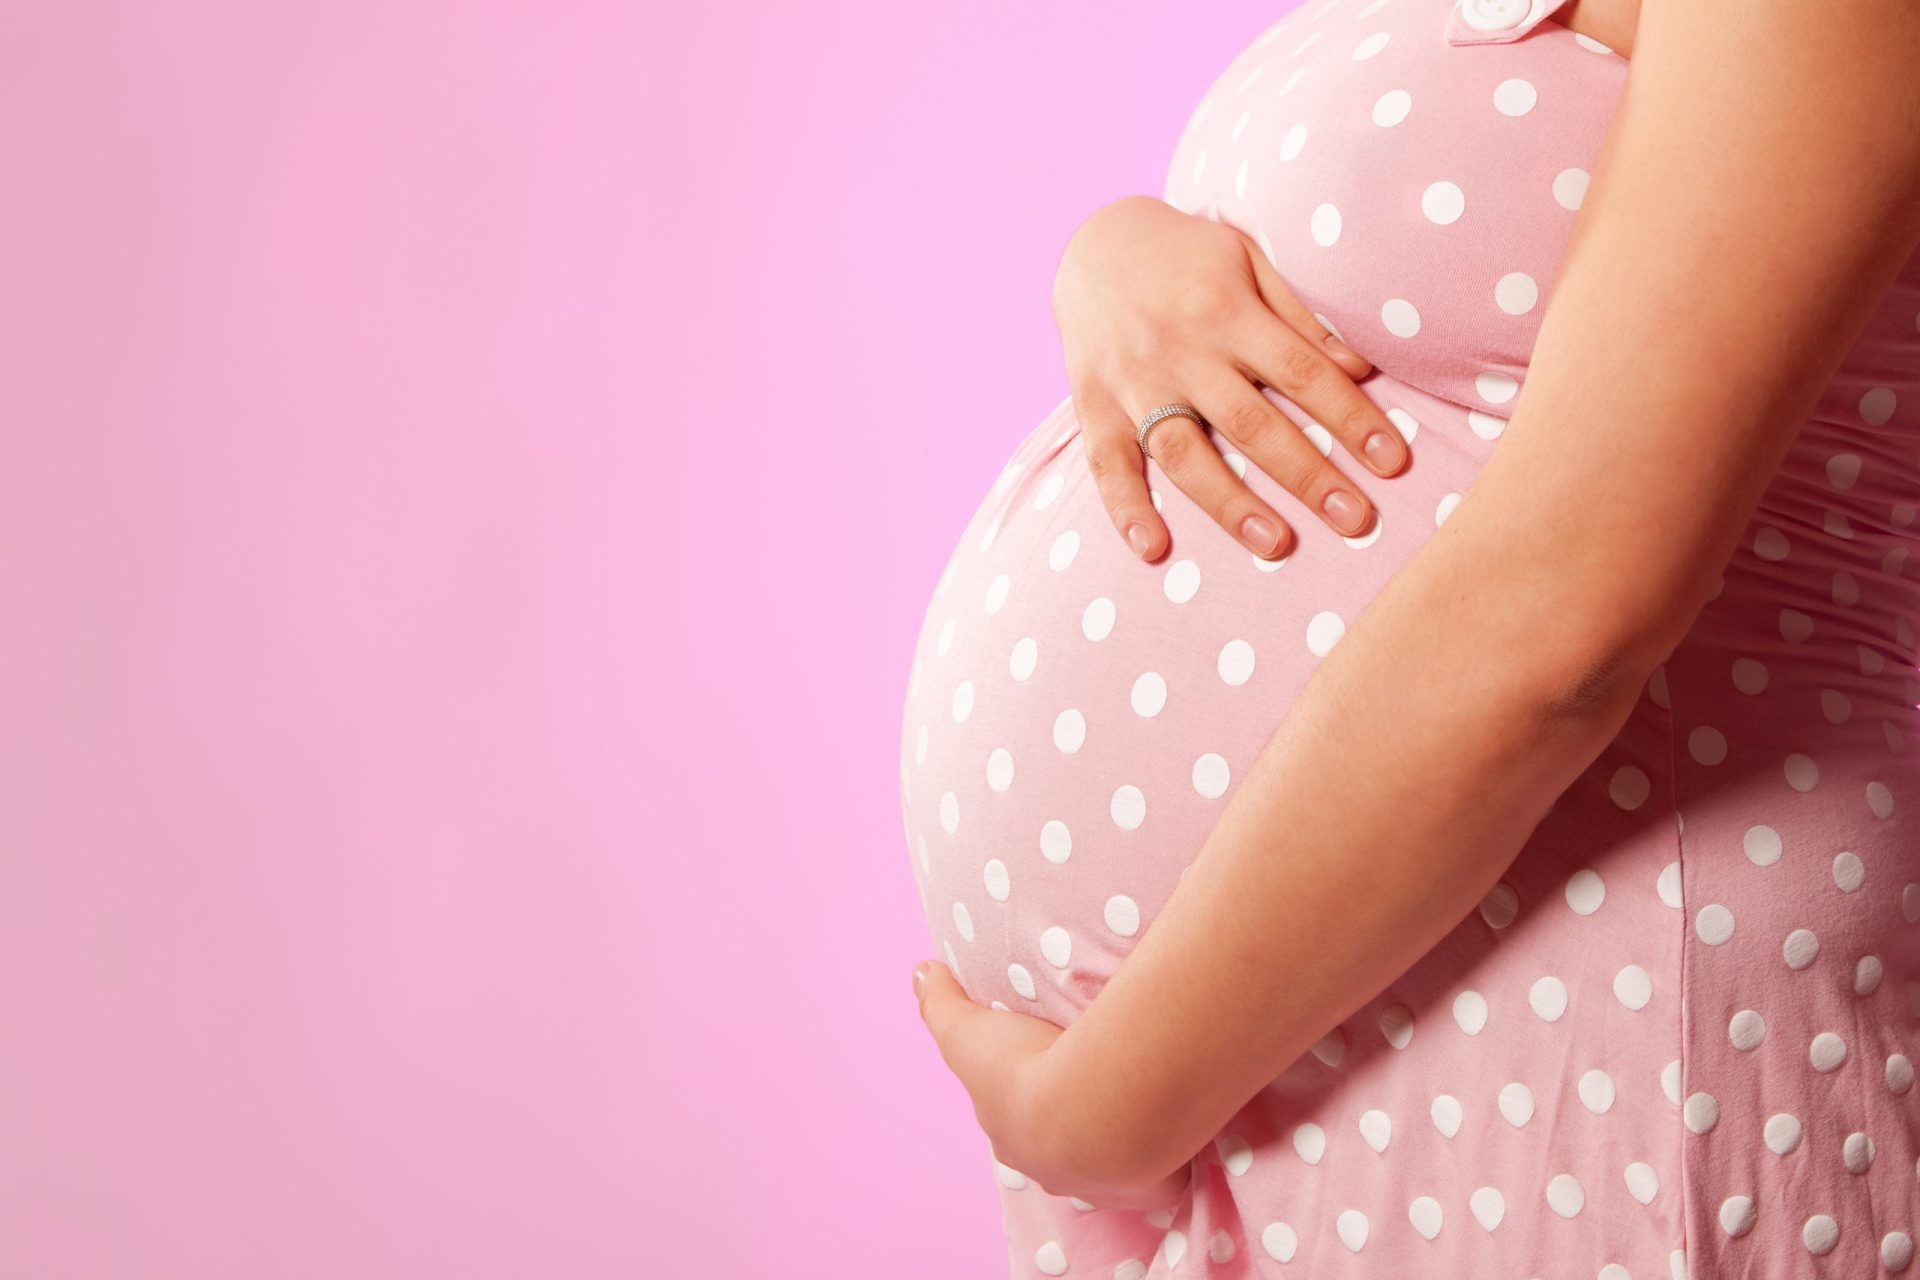 Taxa moderadora na IVG pode desviar mulheres para aborto clandestino